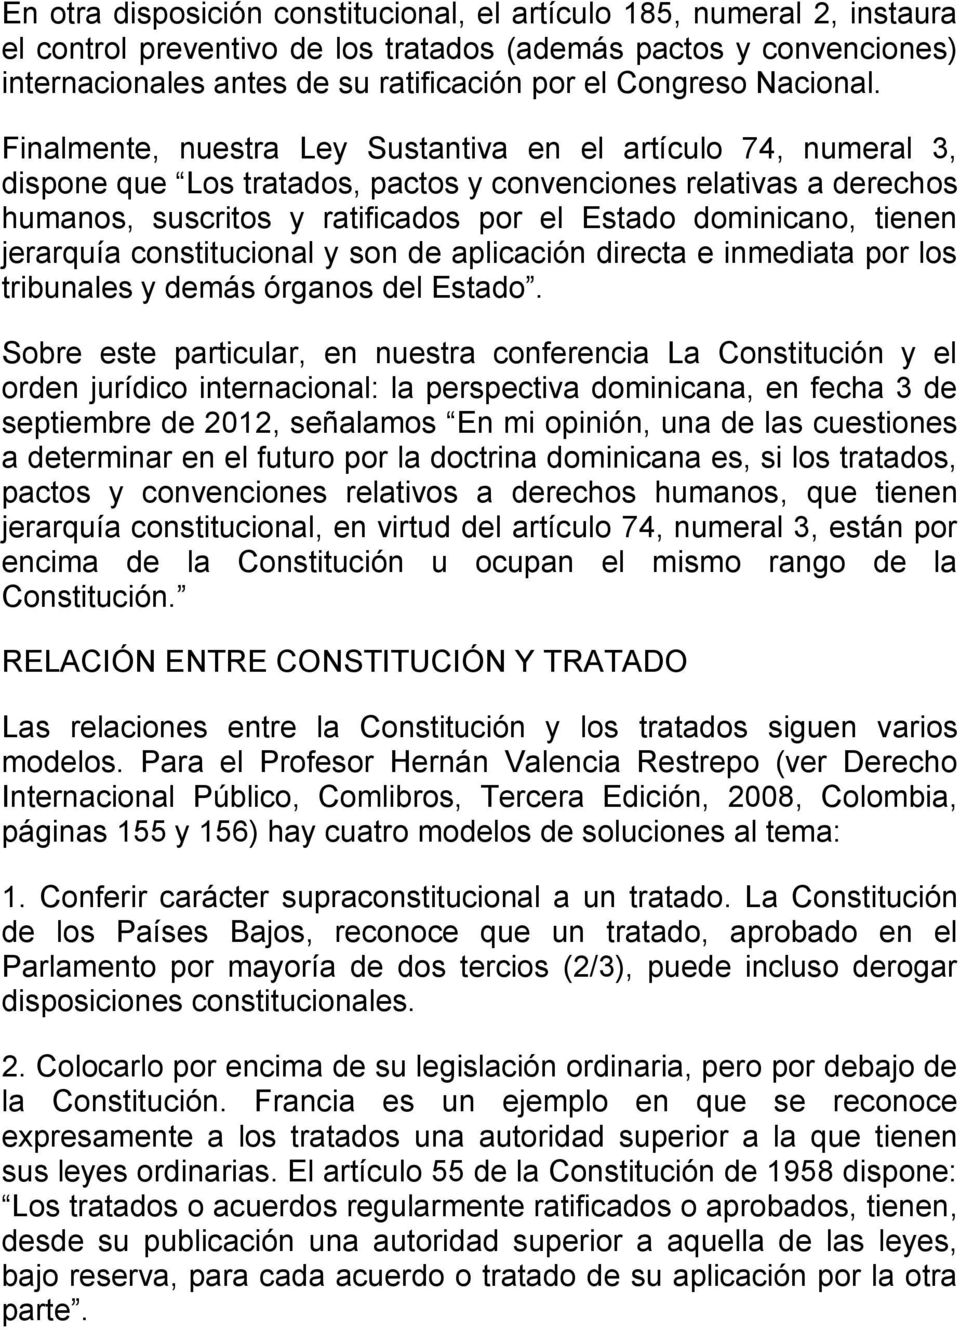 Finalmente, nuestra Ley Sustantiva en el artículo 74, numeral 3, dispone que Los tratados, pactos y convenciones relativas a derechos humanos, suscritos y ratificados por el Estado dominicano, tienen